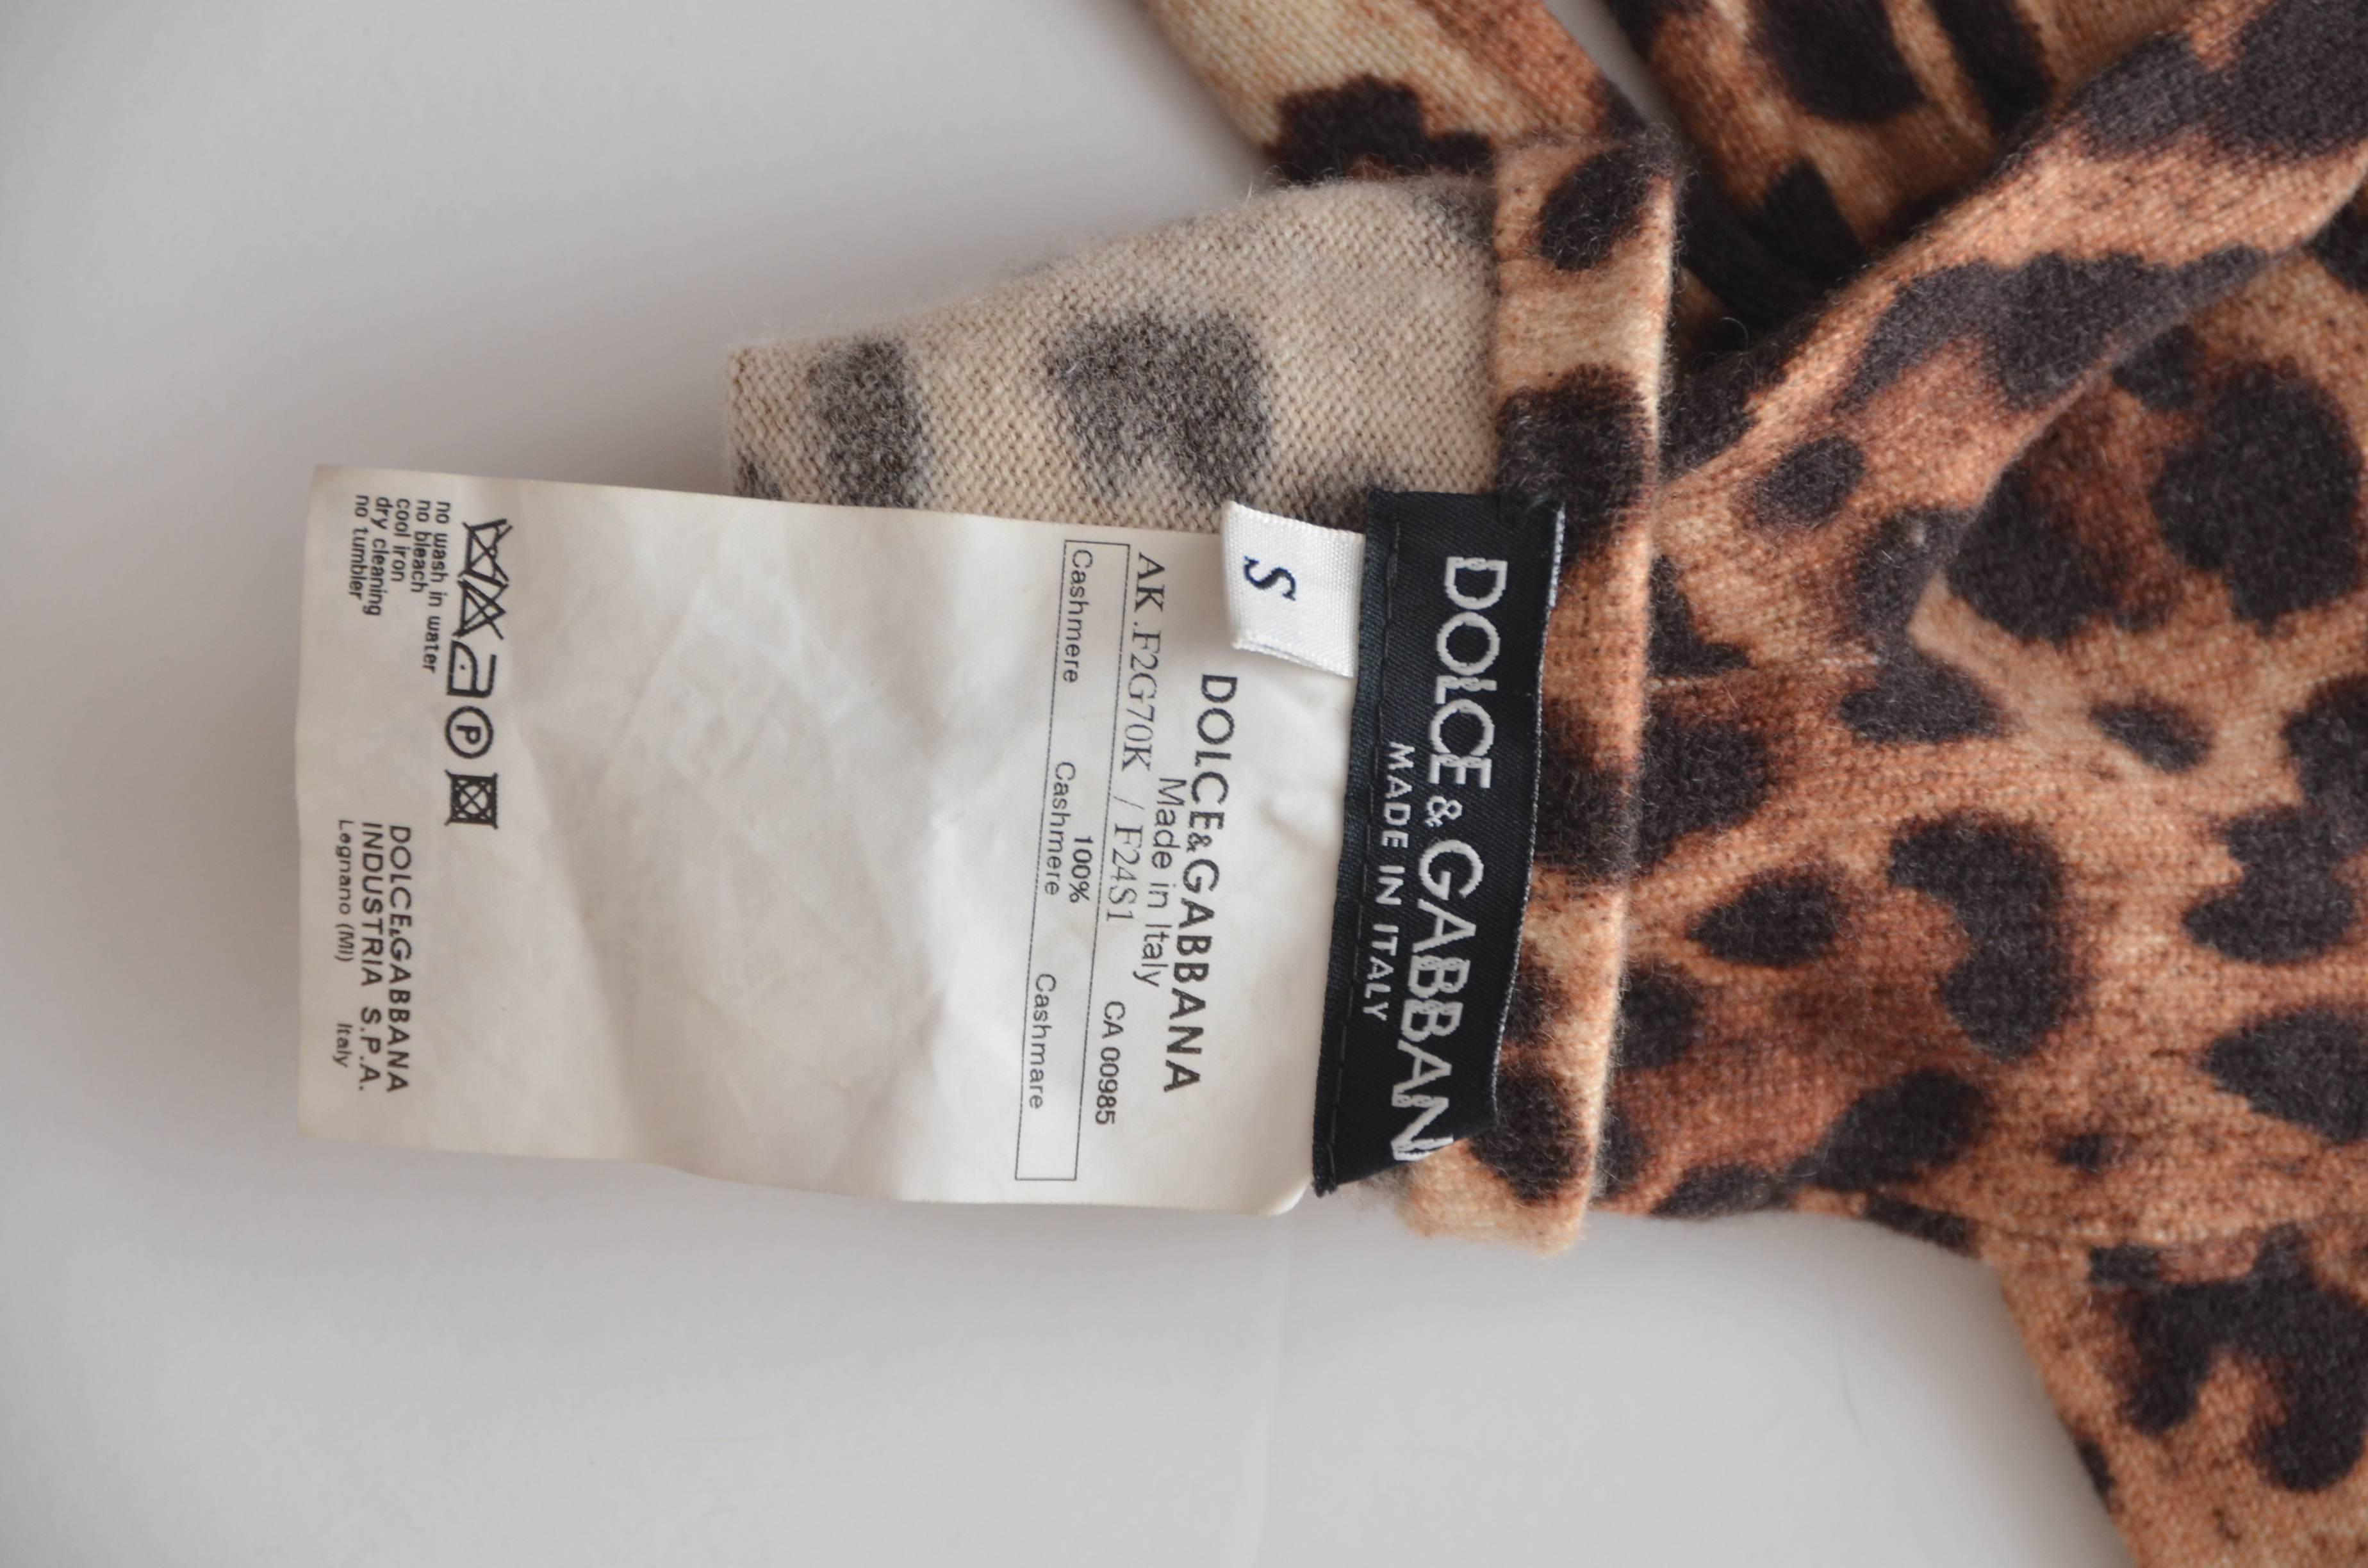 Dolce & Gabbana leopard print gloves.
Excellent condition.
Size S

FINAL SALE.